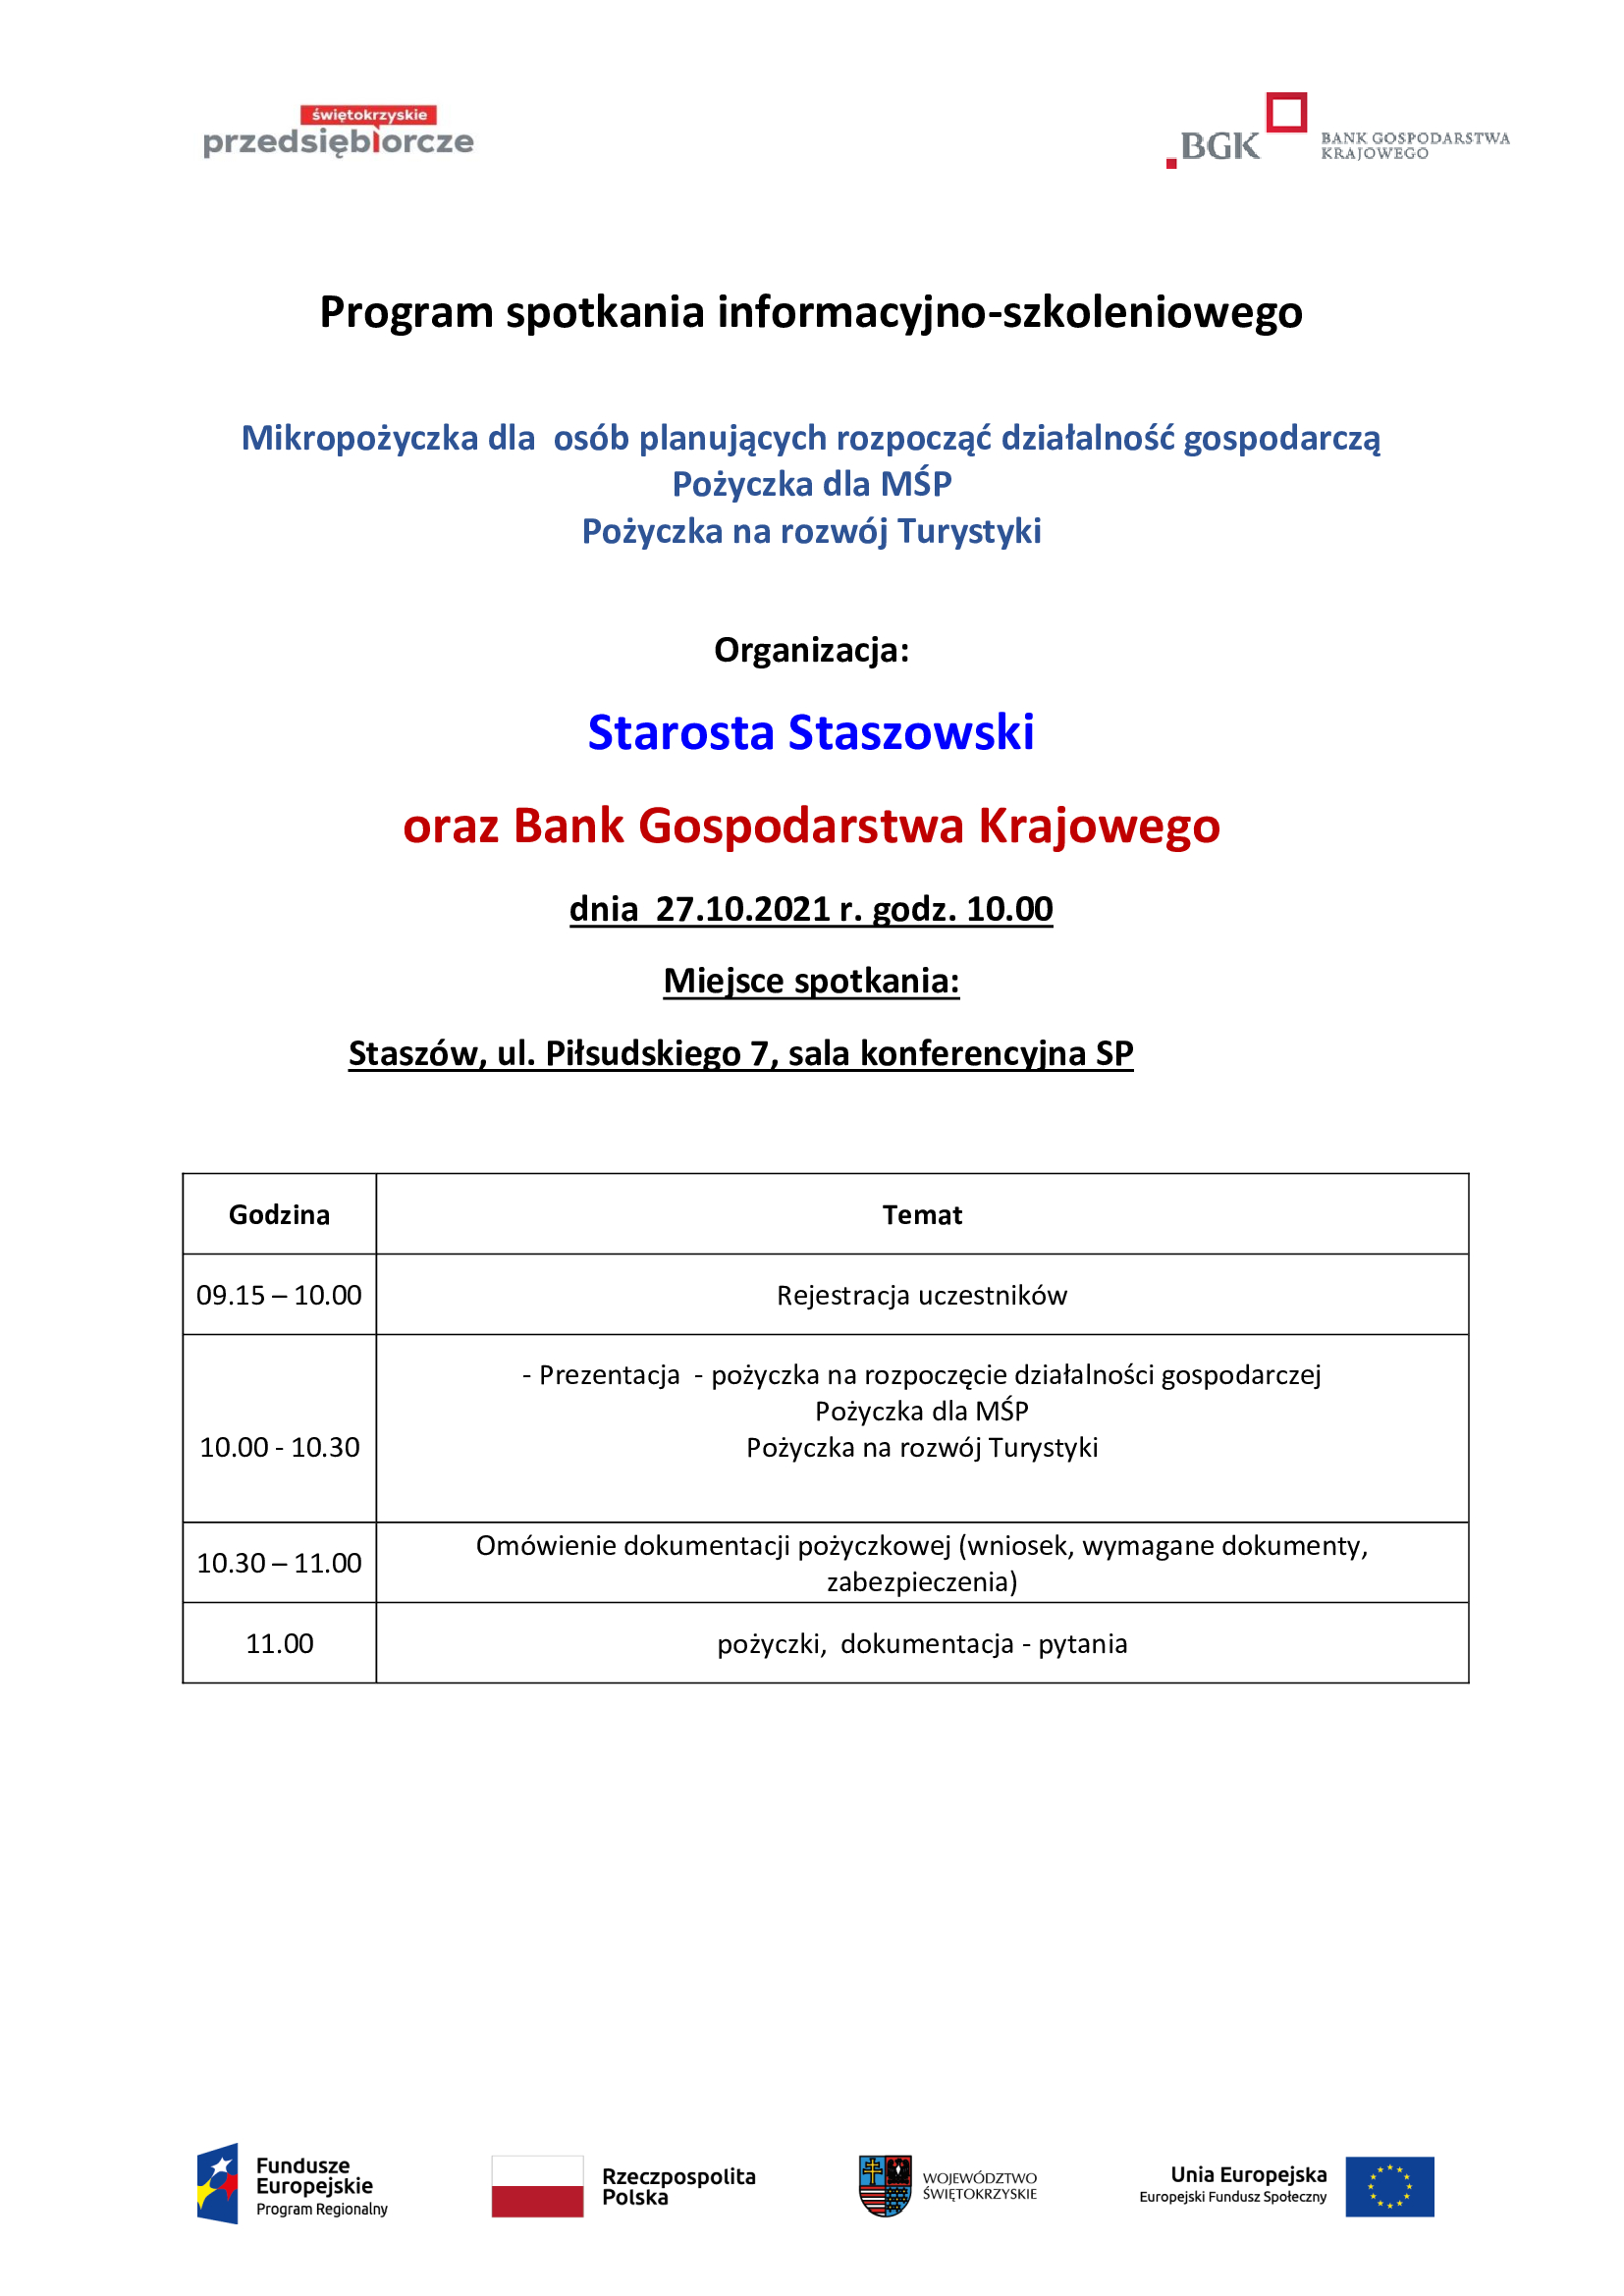 Program-spotkania-informacyjno-szkoleniowego-SP-Staszów-27.10.2021-r.-godz.-10.00